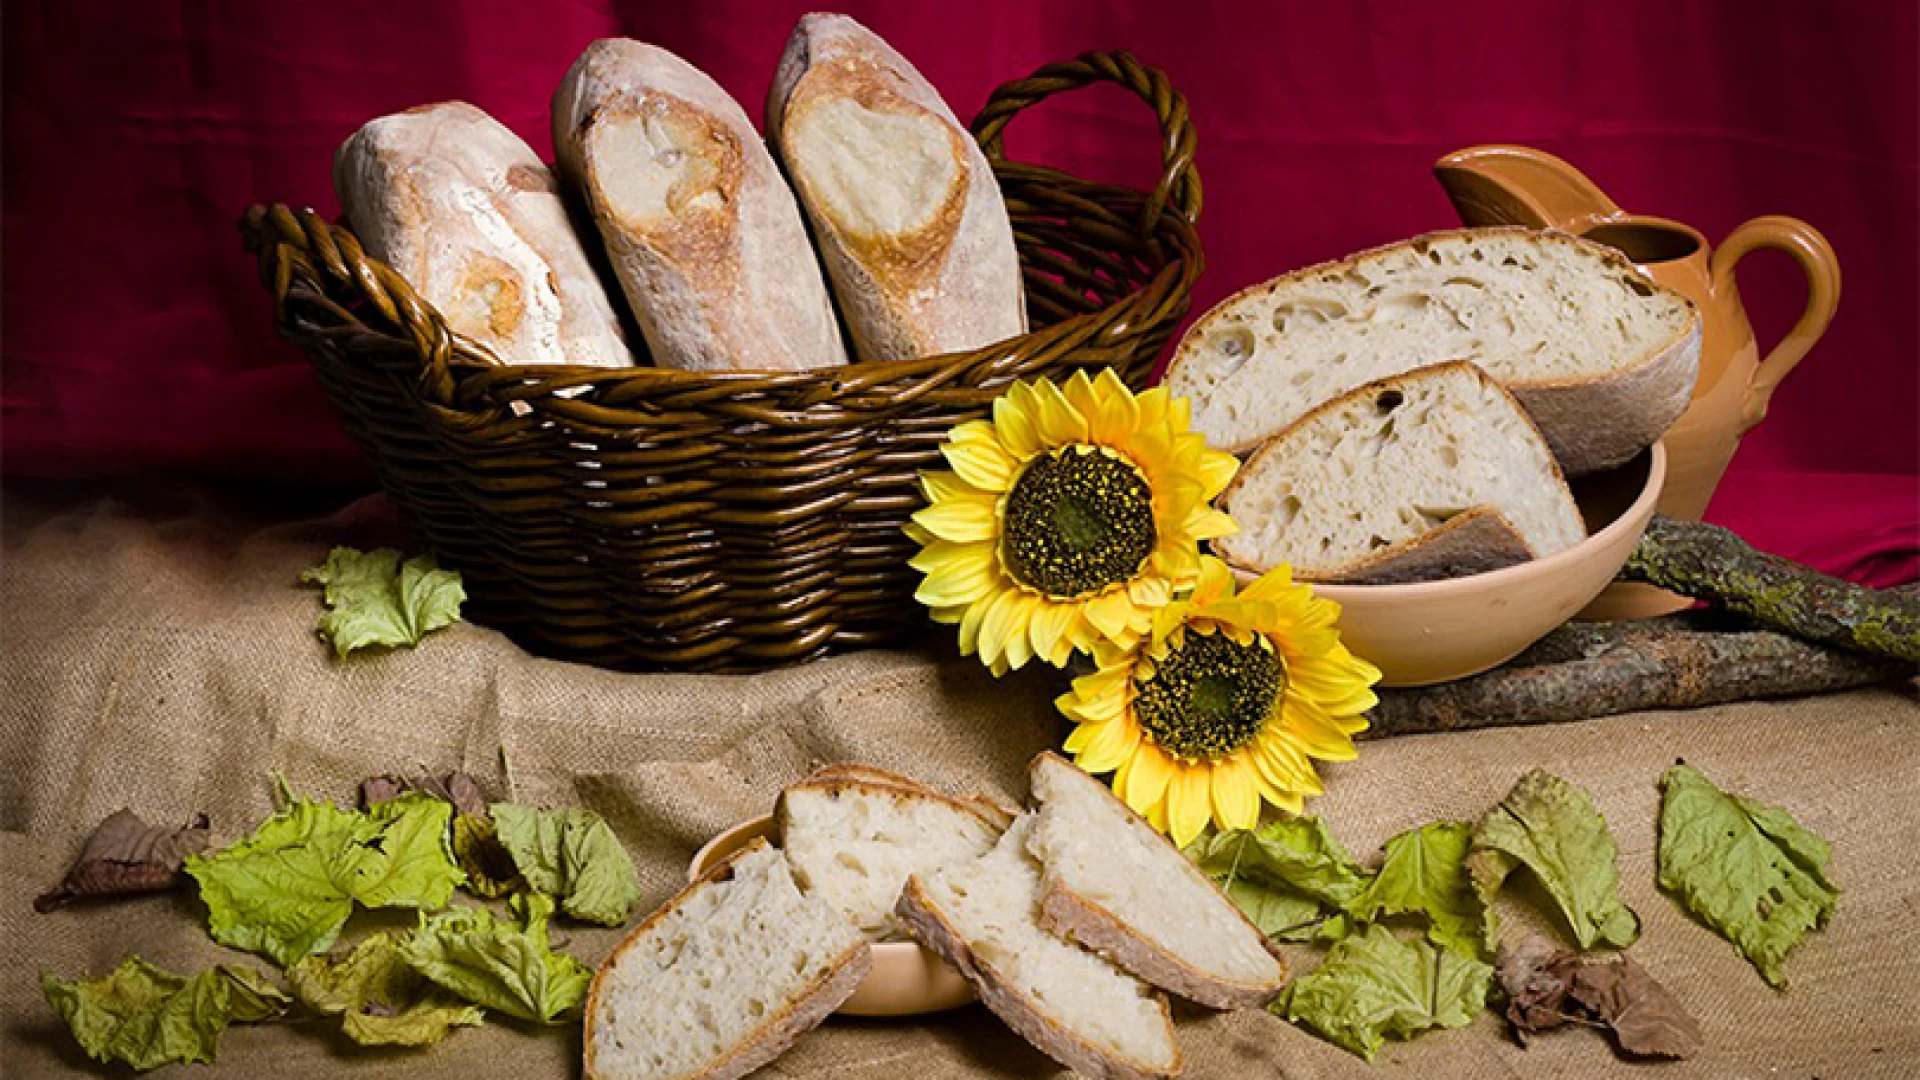 Bruxelles: successo europeo per il Panificio Di Mambro. Il pane casereccio di Venafro ottiene due stelle d’oro dall’International Taste e Quality Institute (iTQi).